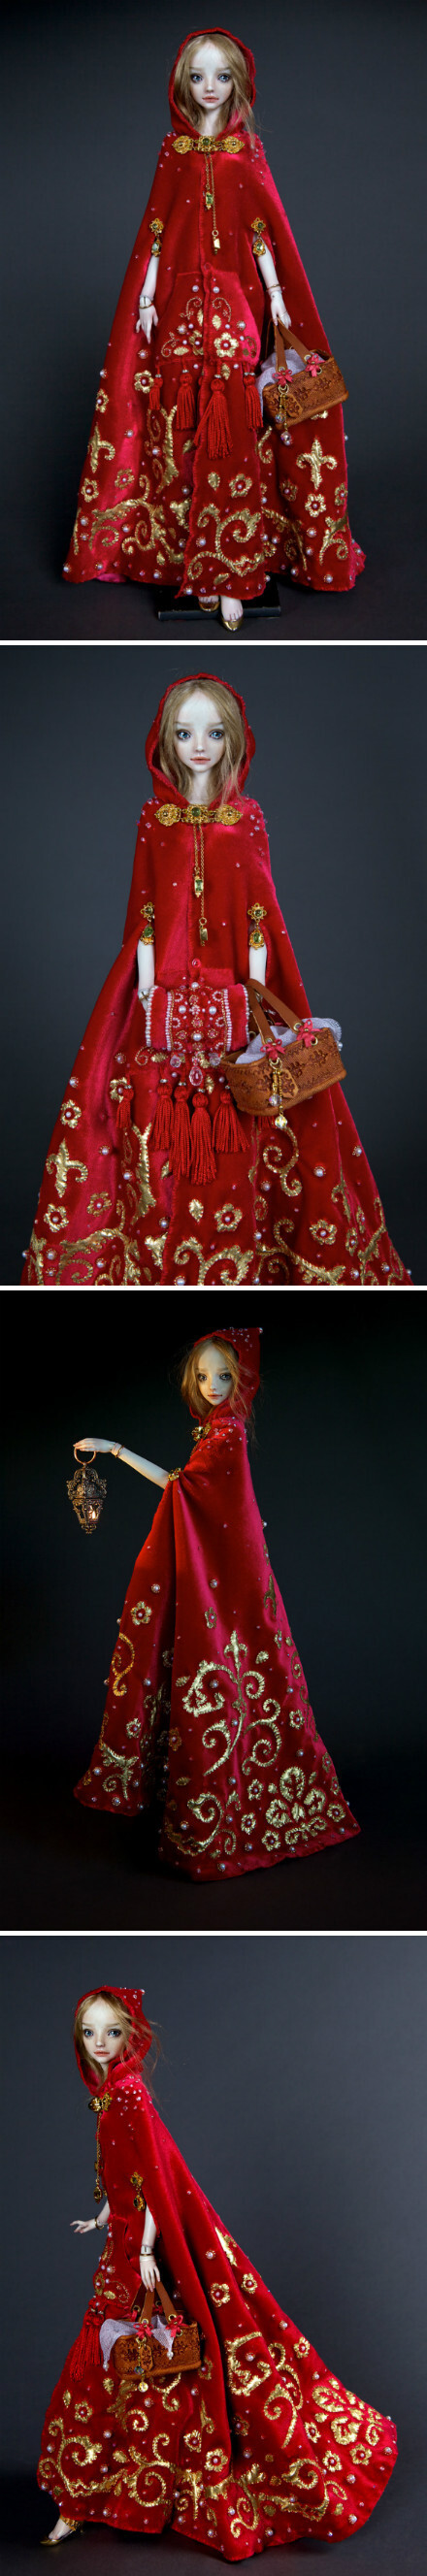 Enchanted Doll小红帽系列